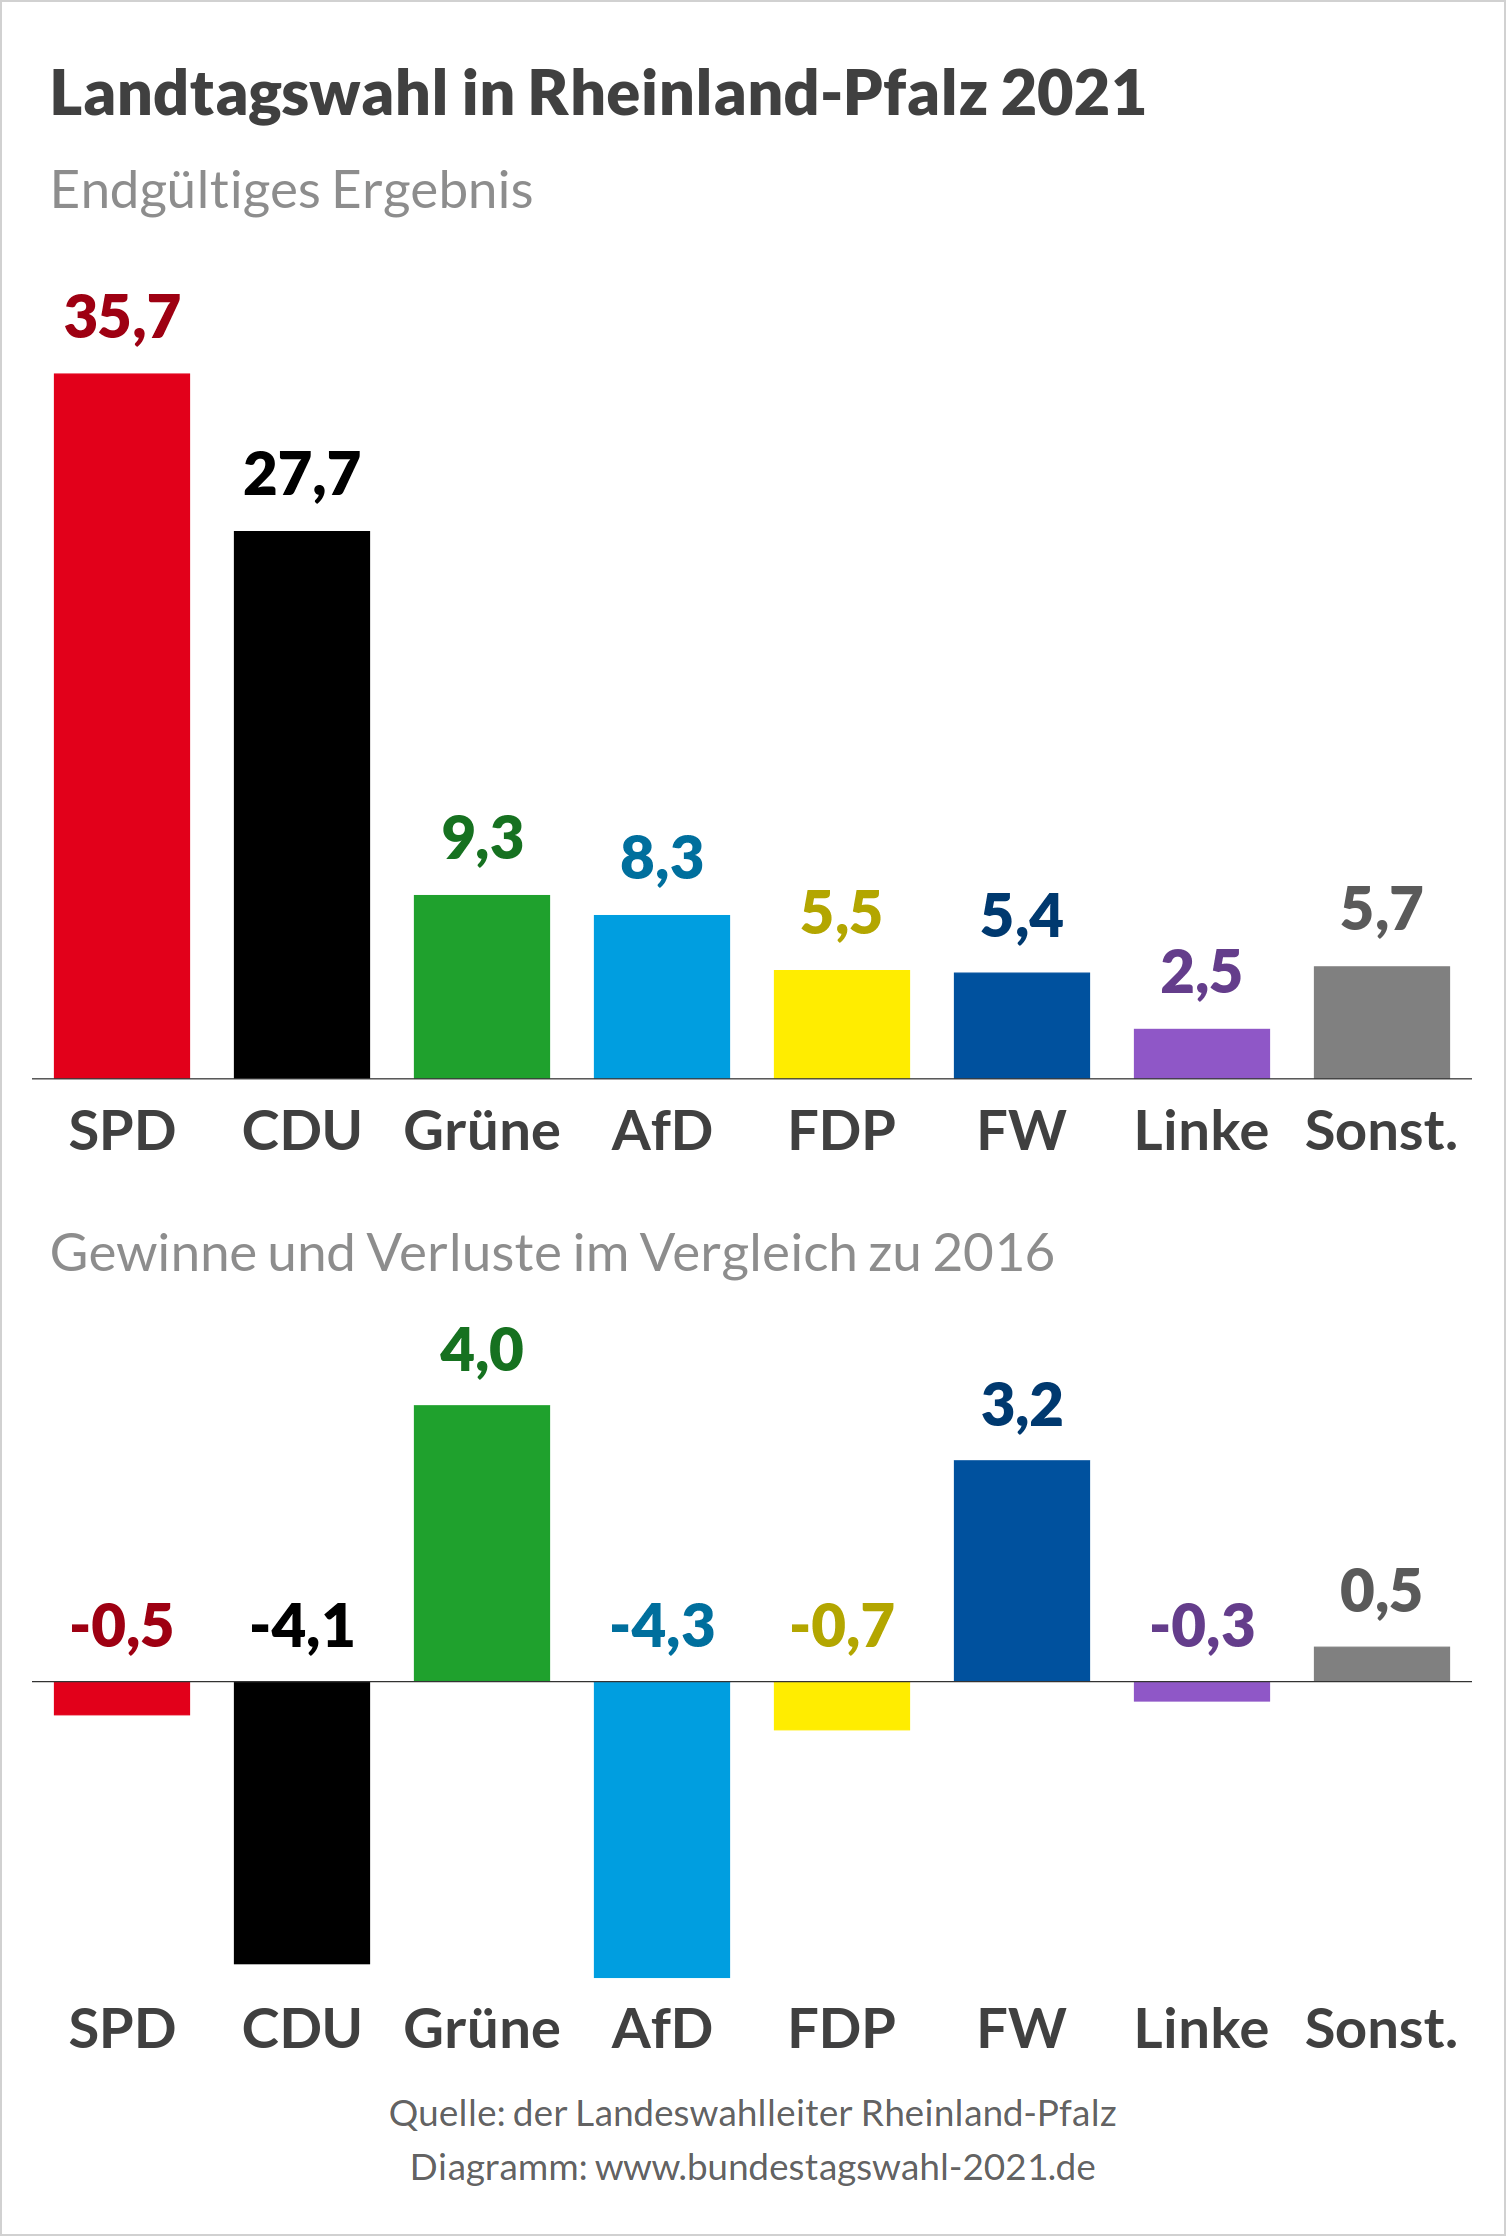 Ergebnis der Landtagswahl in Rheinland-Pfalz 2021 - Edgültiges Wahlergebnis